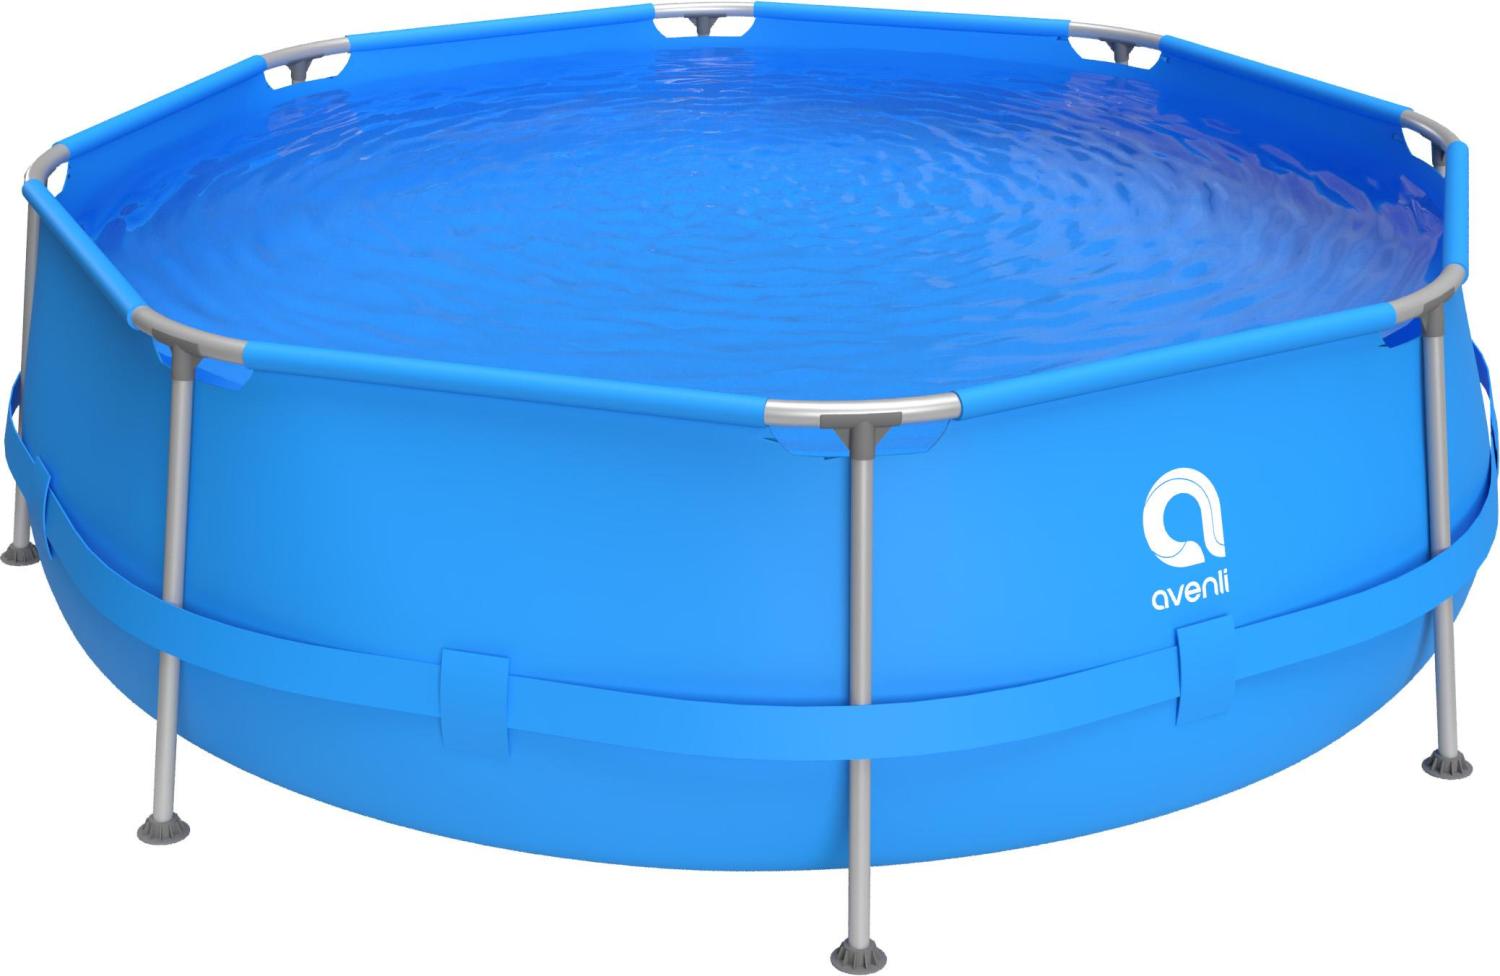 Avenli Frame Pool 300 x 76 cm, Aufstellpool rund, ohne Pumpe, blau Bild 1